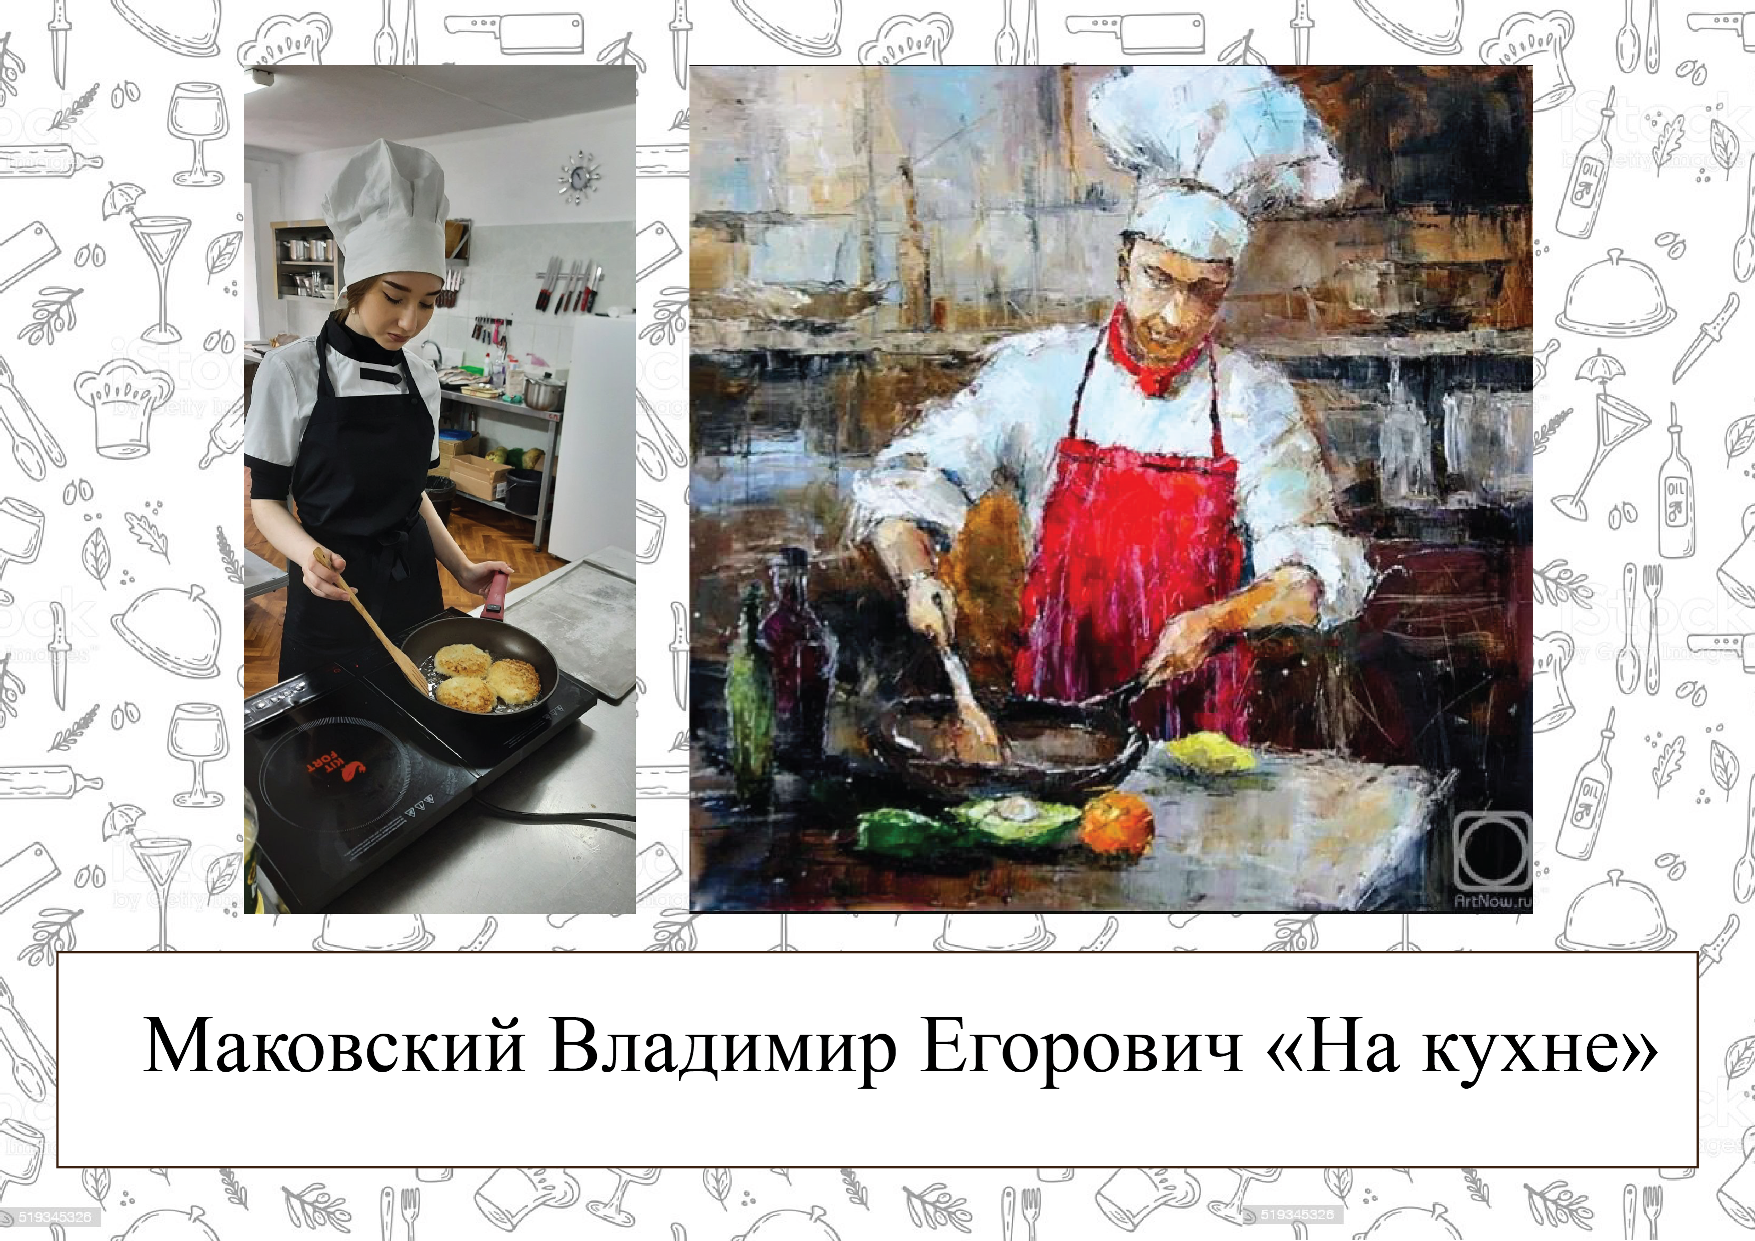 Воссоздание картины - Маковский Владимир Егорович "На кухне"